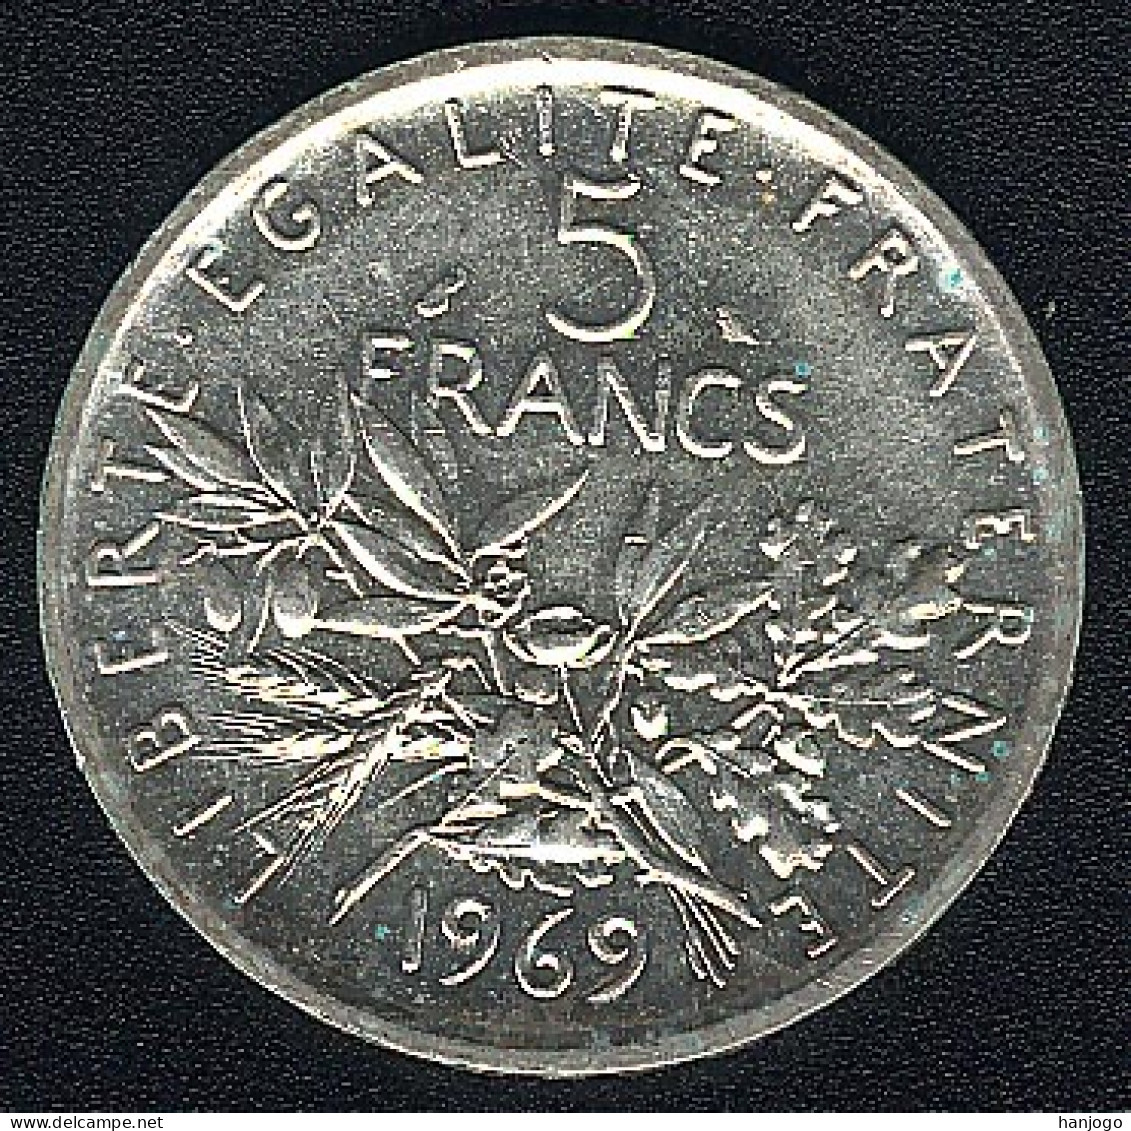 Frankreich, 5 Francs 1969, Säerin, Silber, Besseres Jahr, XF - 5 Francs